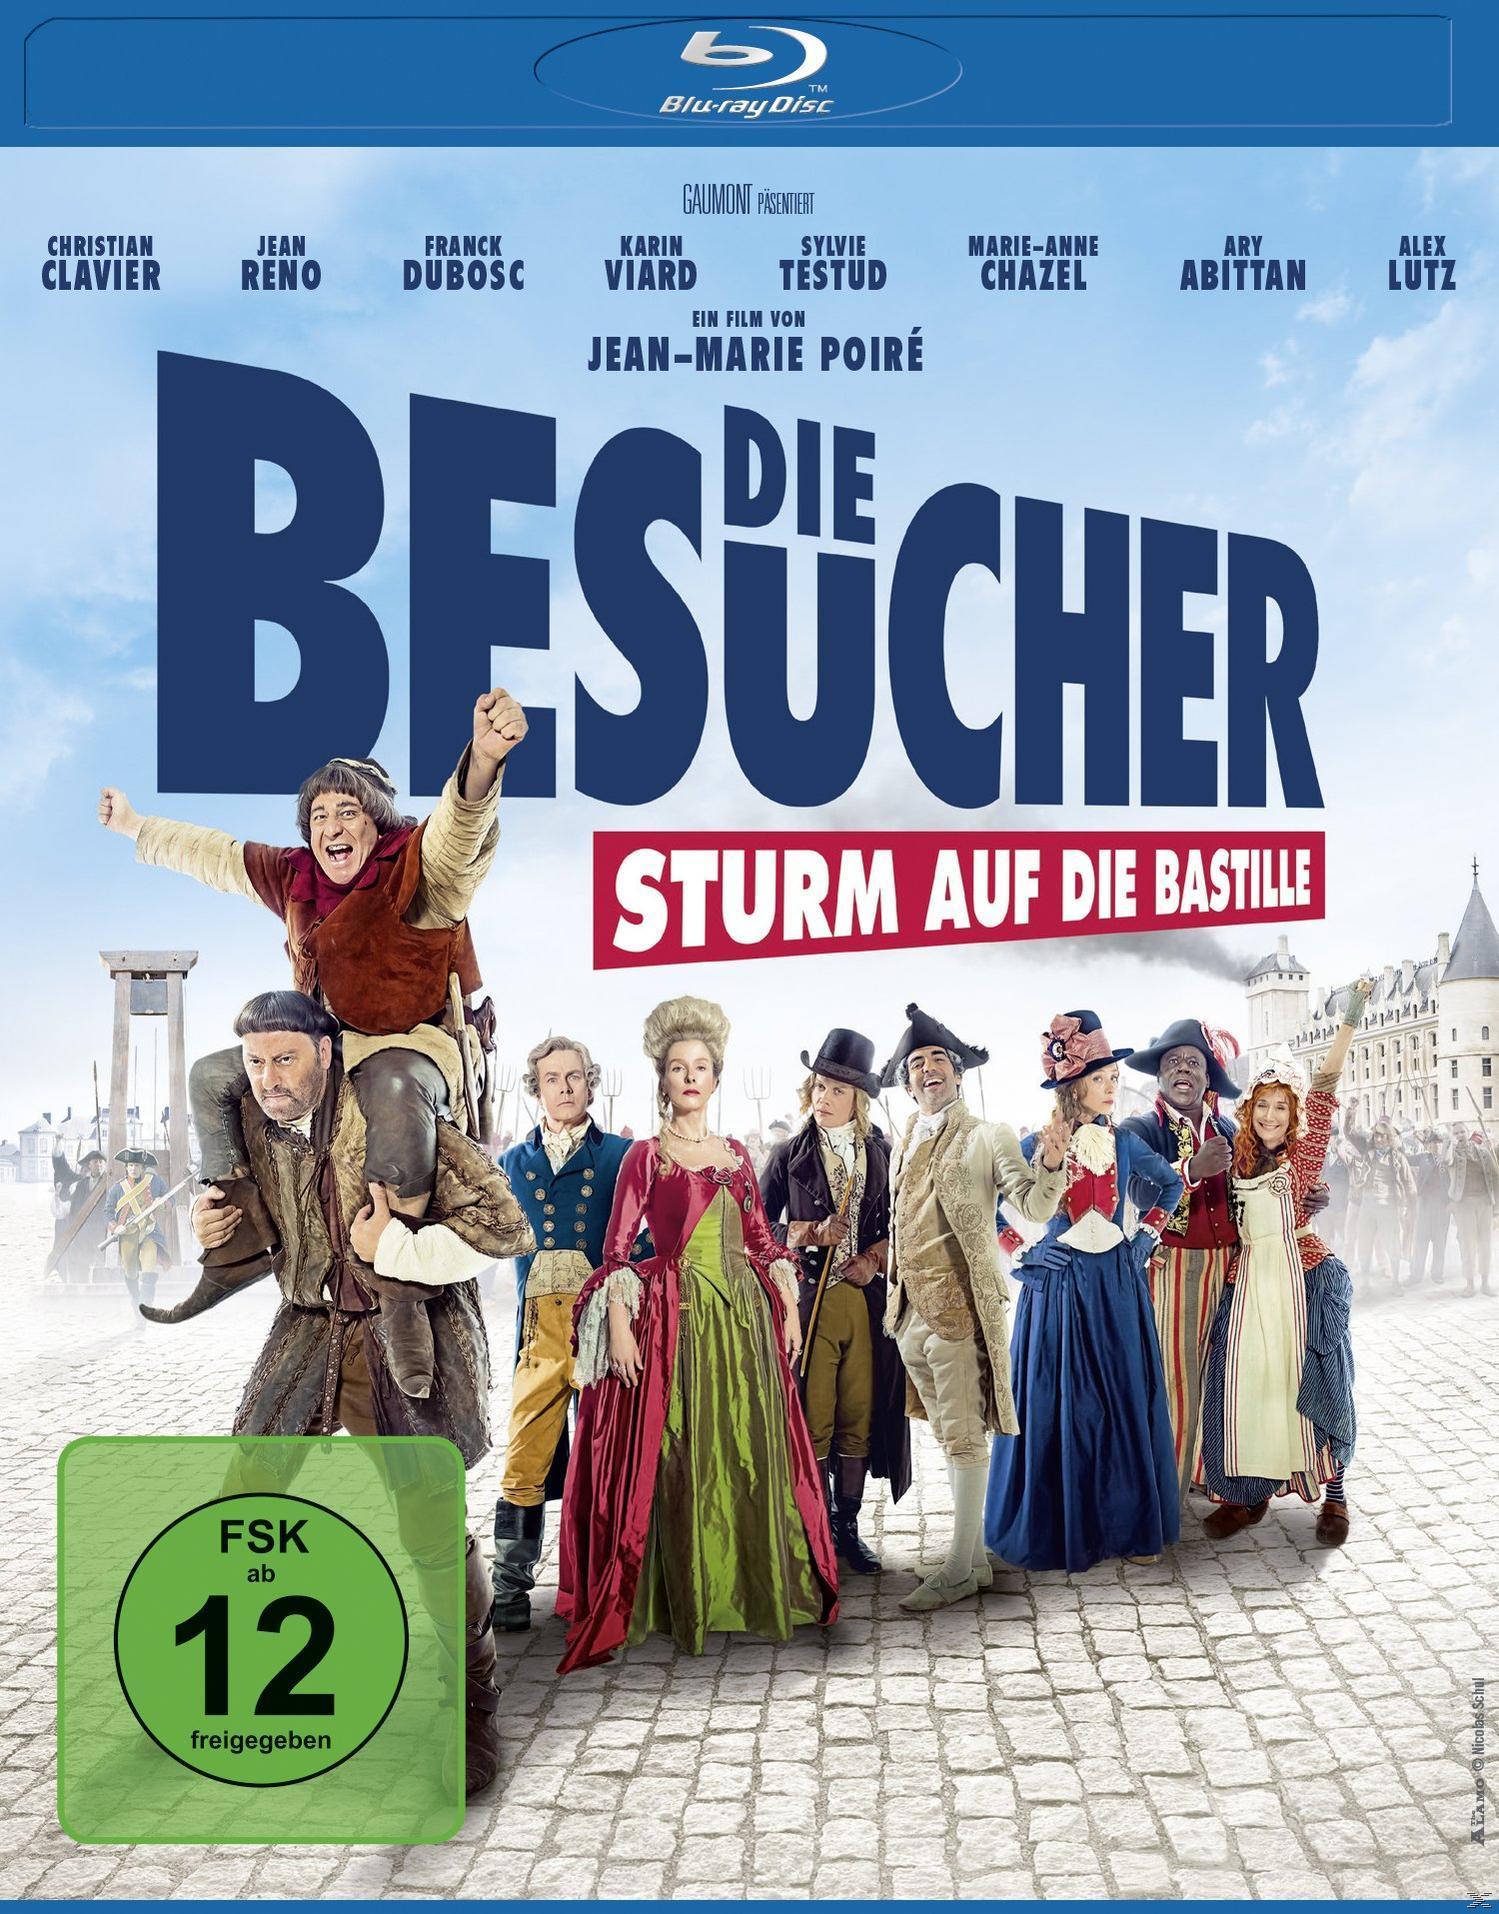 Blu-ray auf Die Besucher Sturm die Bastille -